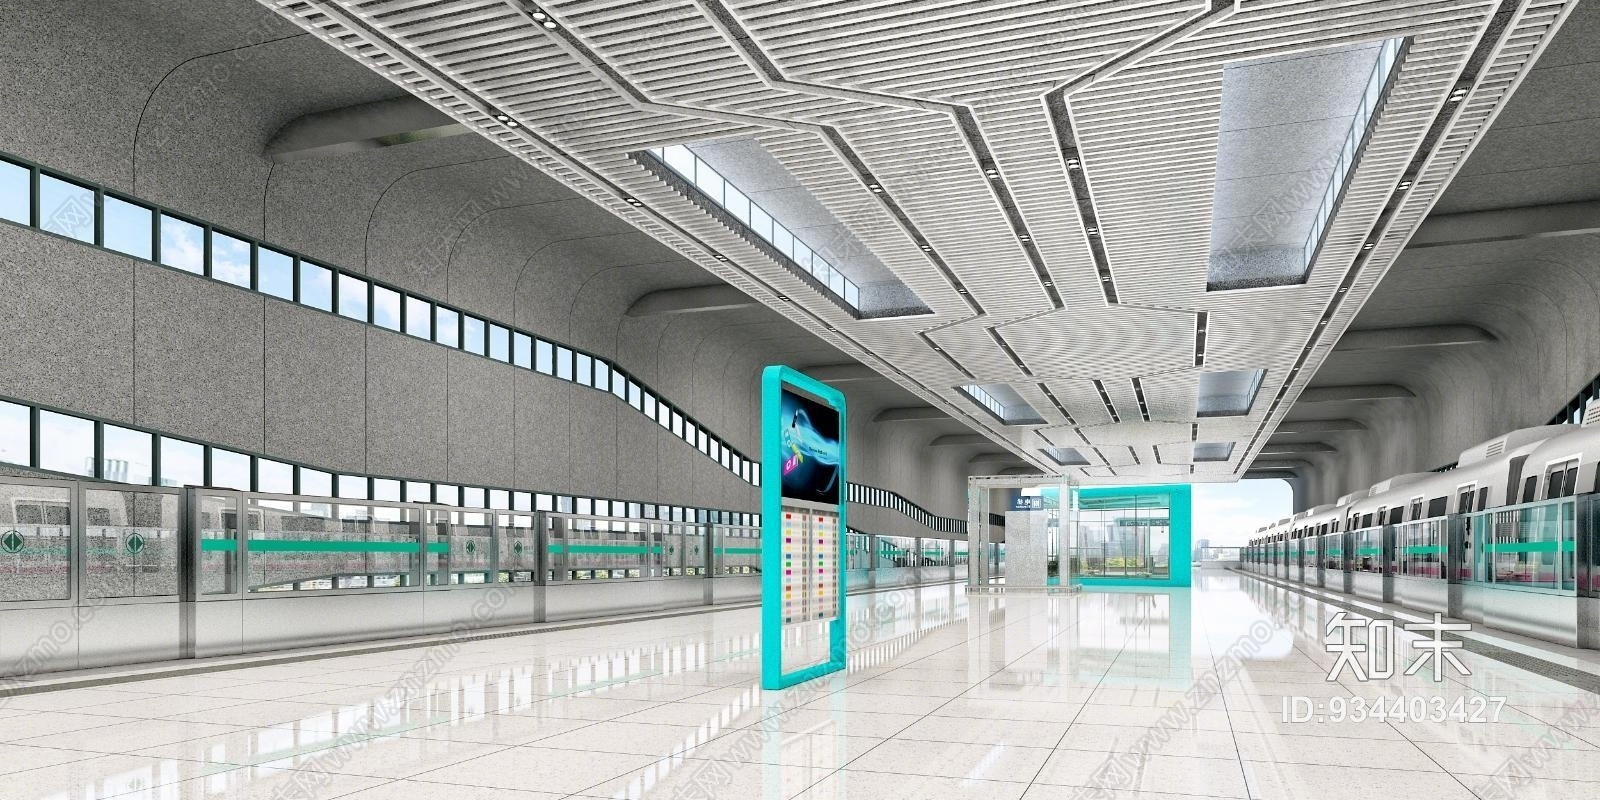 后现代地铁车站3d模型下载【id:934403427】